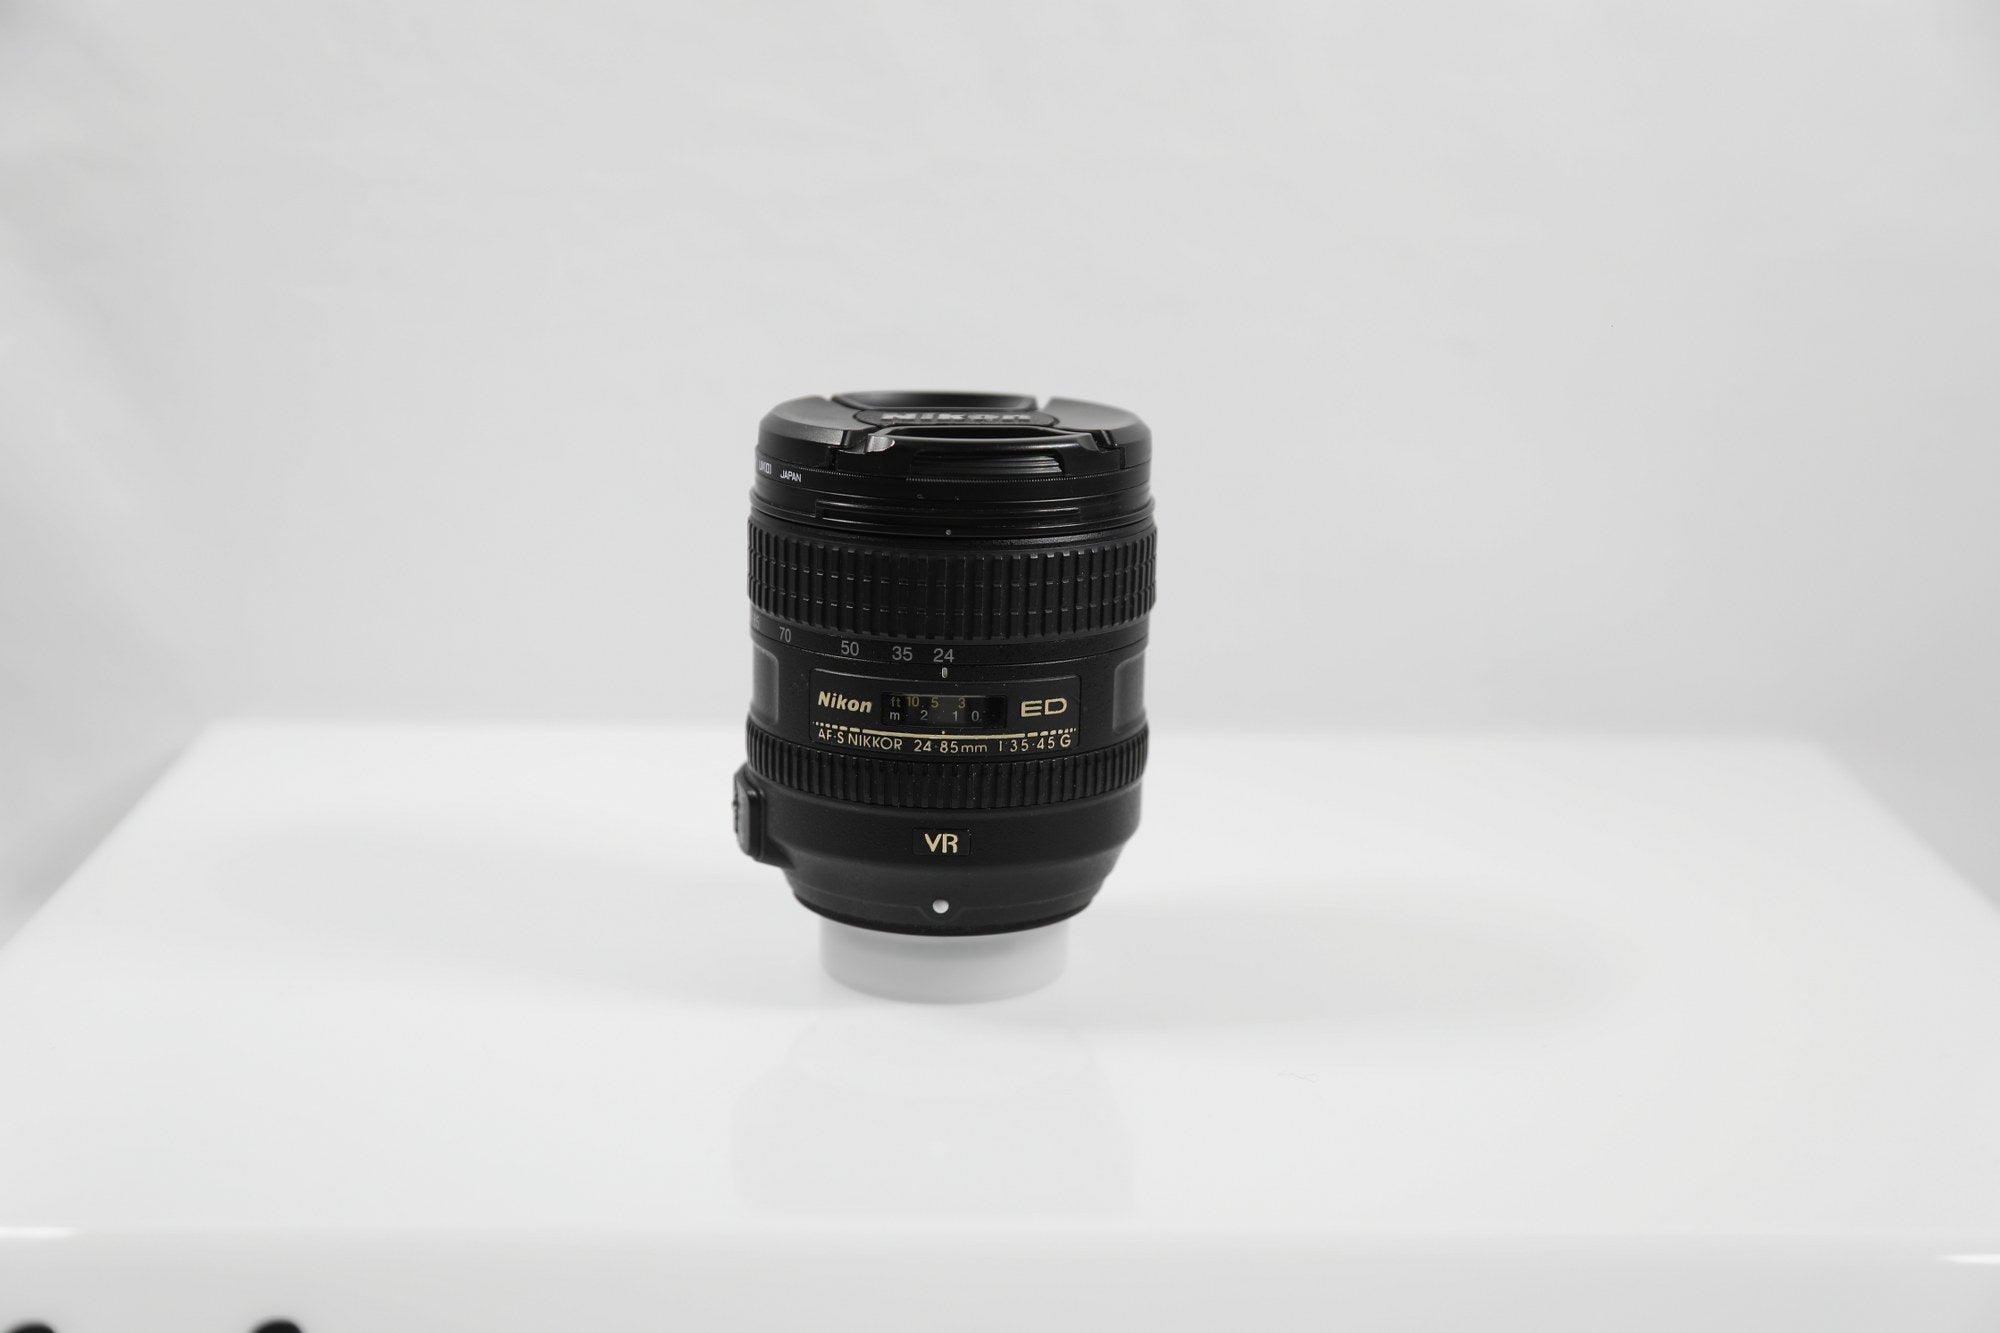 Nikon AF-S NIKKOR 24-85mm f/3.5-4.5G ED VR Lens - F-Mount Lens/FX Format